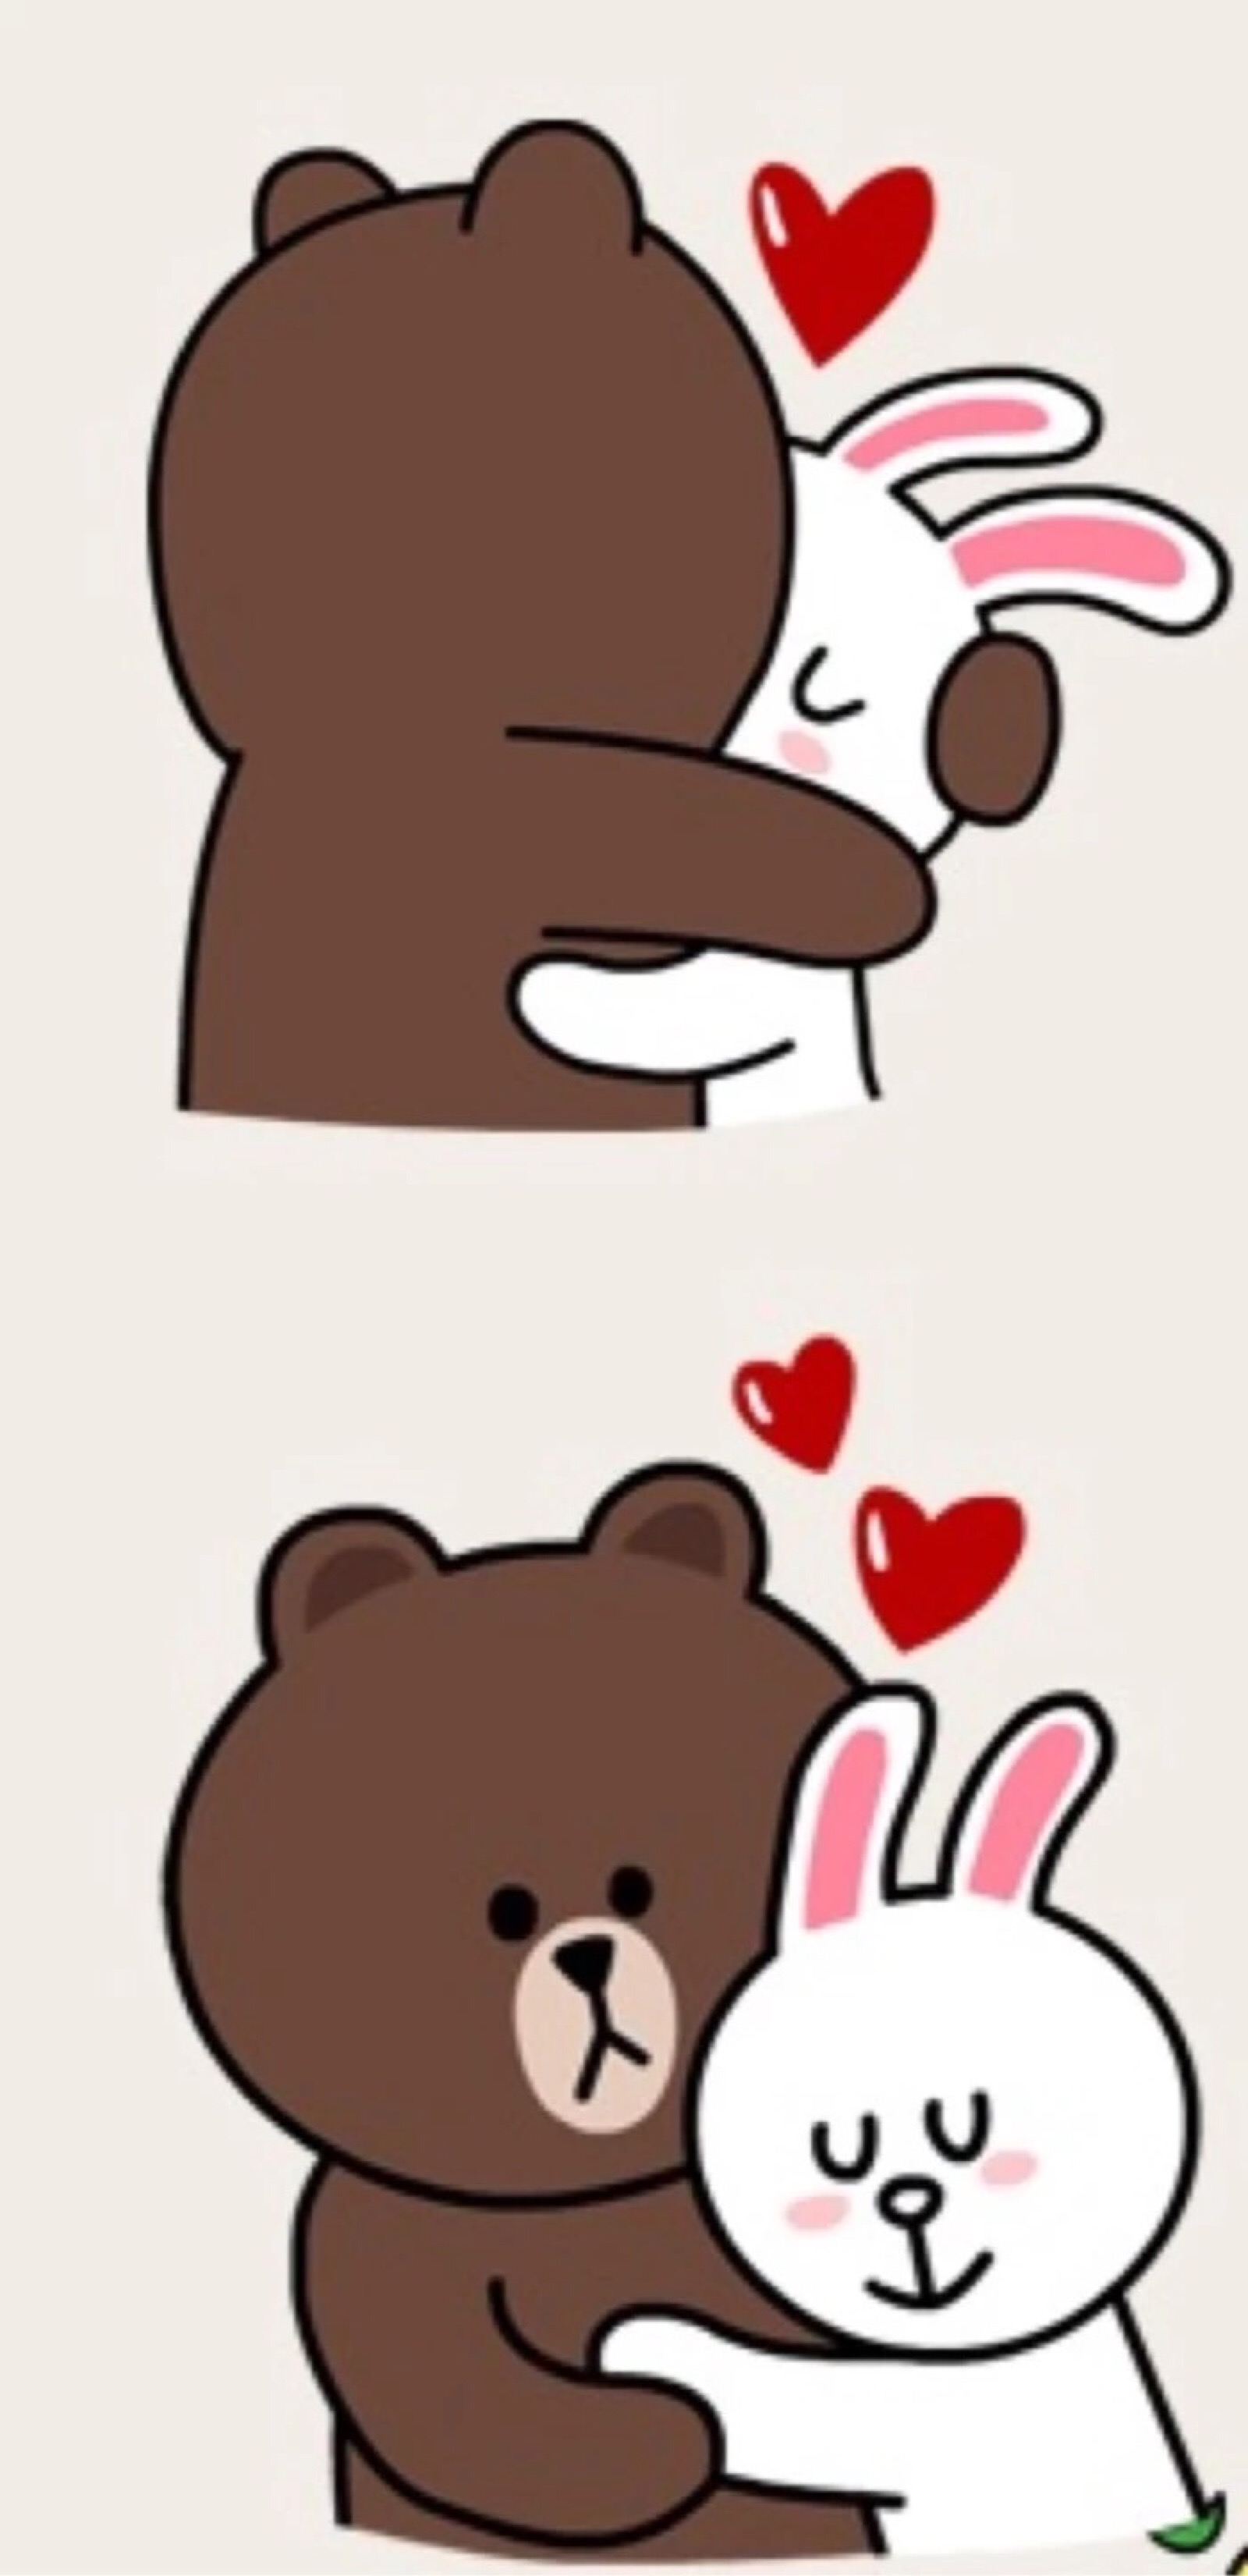 布朗熊可妮兔情侣壁纸图片